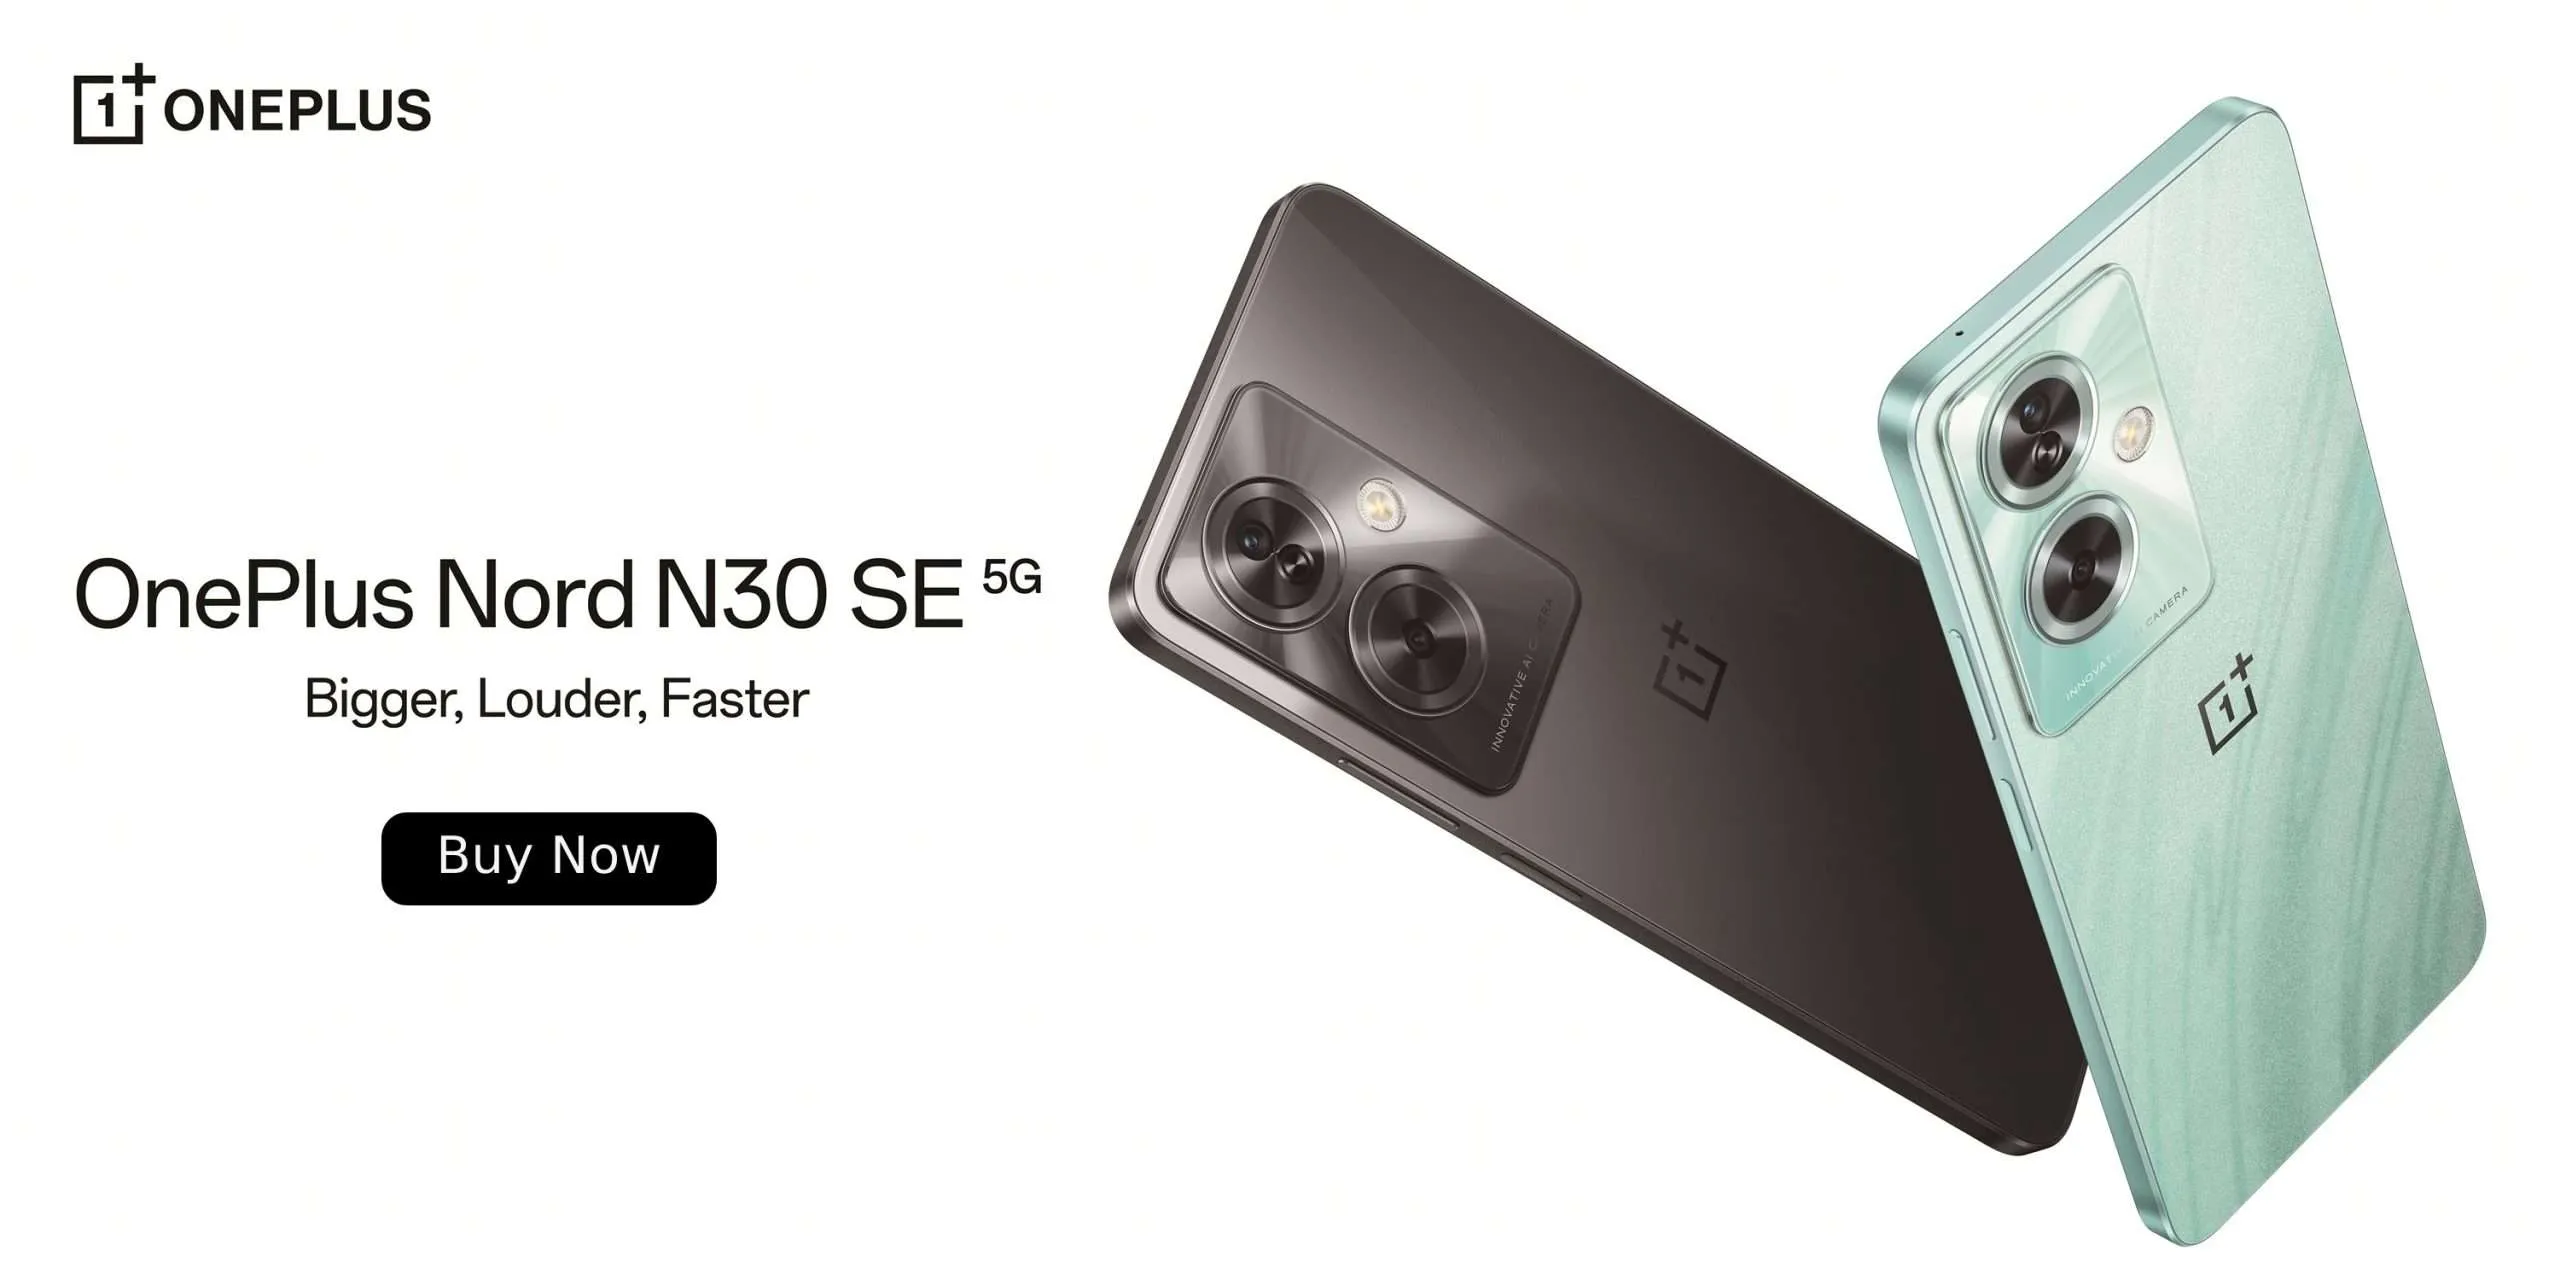 Gama media sigue en expansión, llega el OnePlus Nord N30 SE llega a México